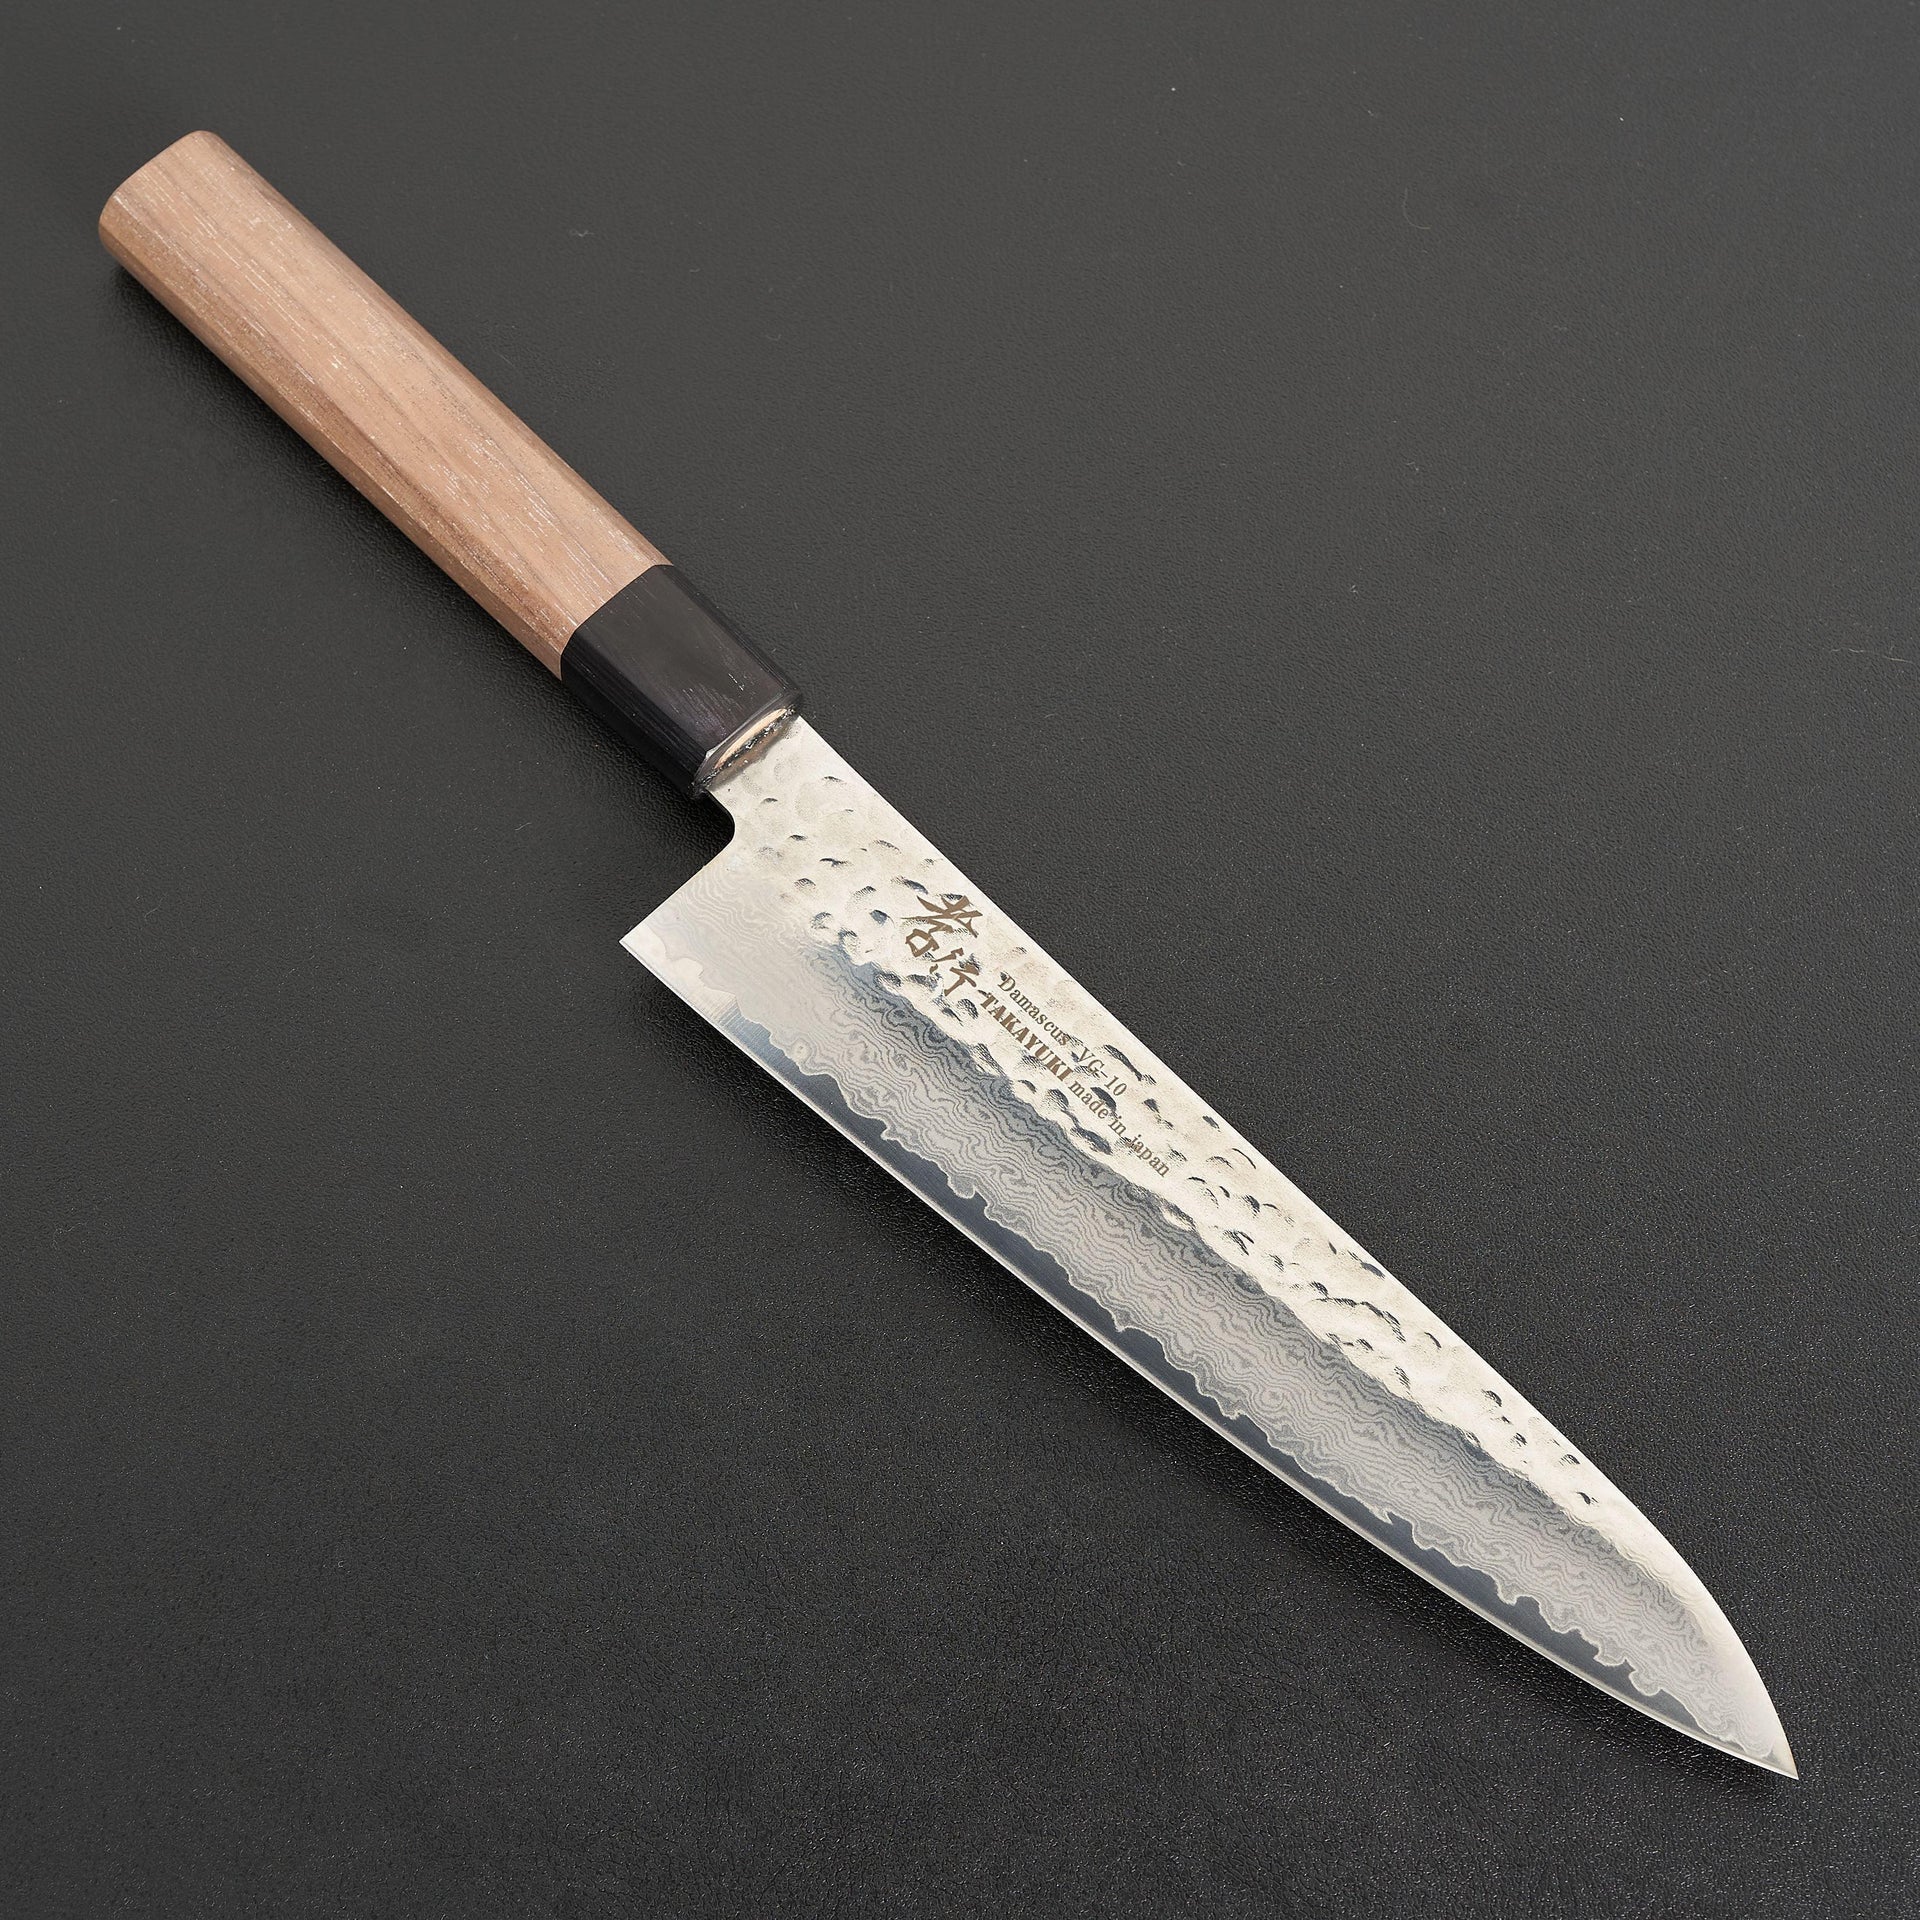 https://carbonknifeco.com/cdn/shop/files/Sakai-Takayuki-Walnut-33-Layer-Damascus-Gyuto-210mm-Knife-Sakai-Takayuki-chef-culinary-japanese-knife-knives.jpg?v=1703018463&width=1920